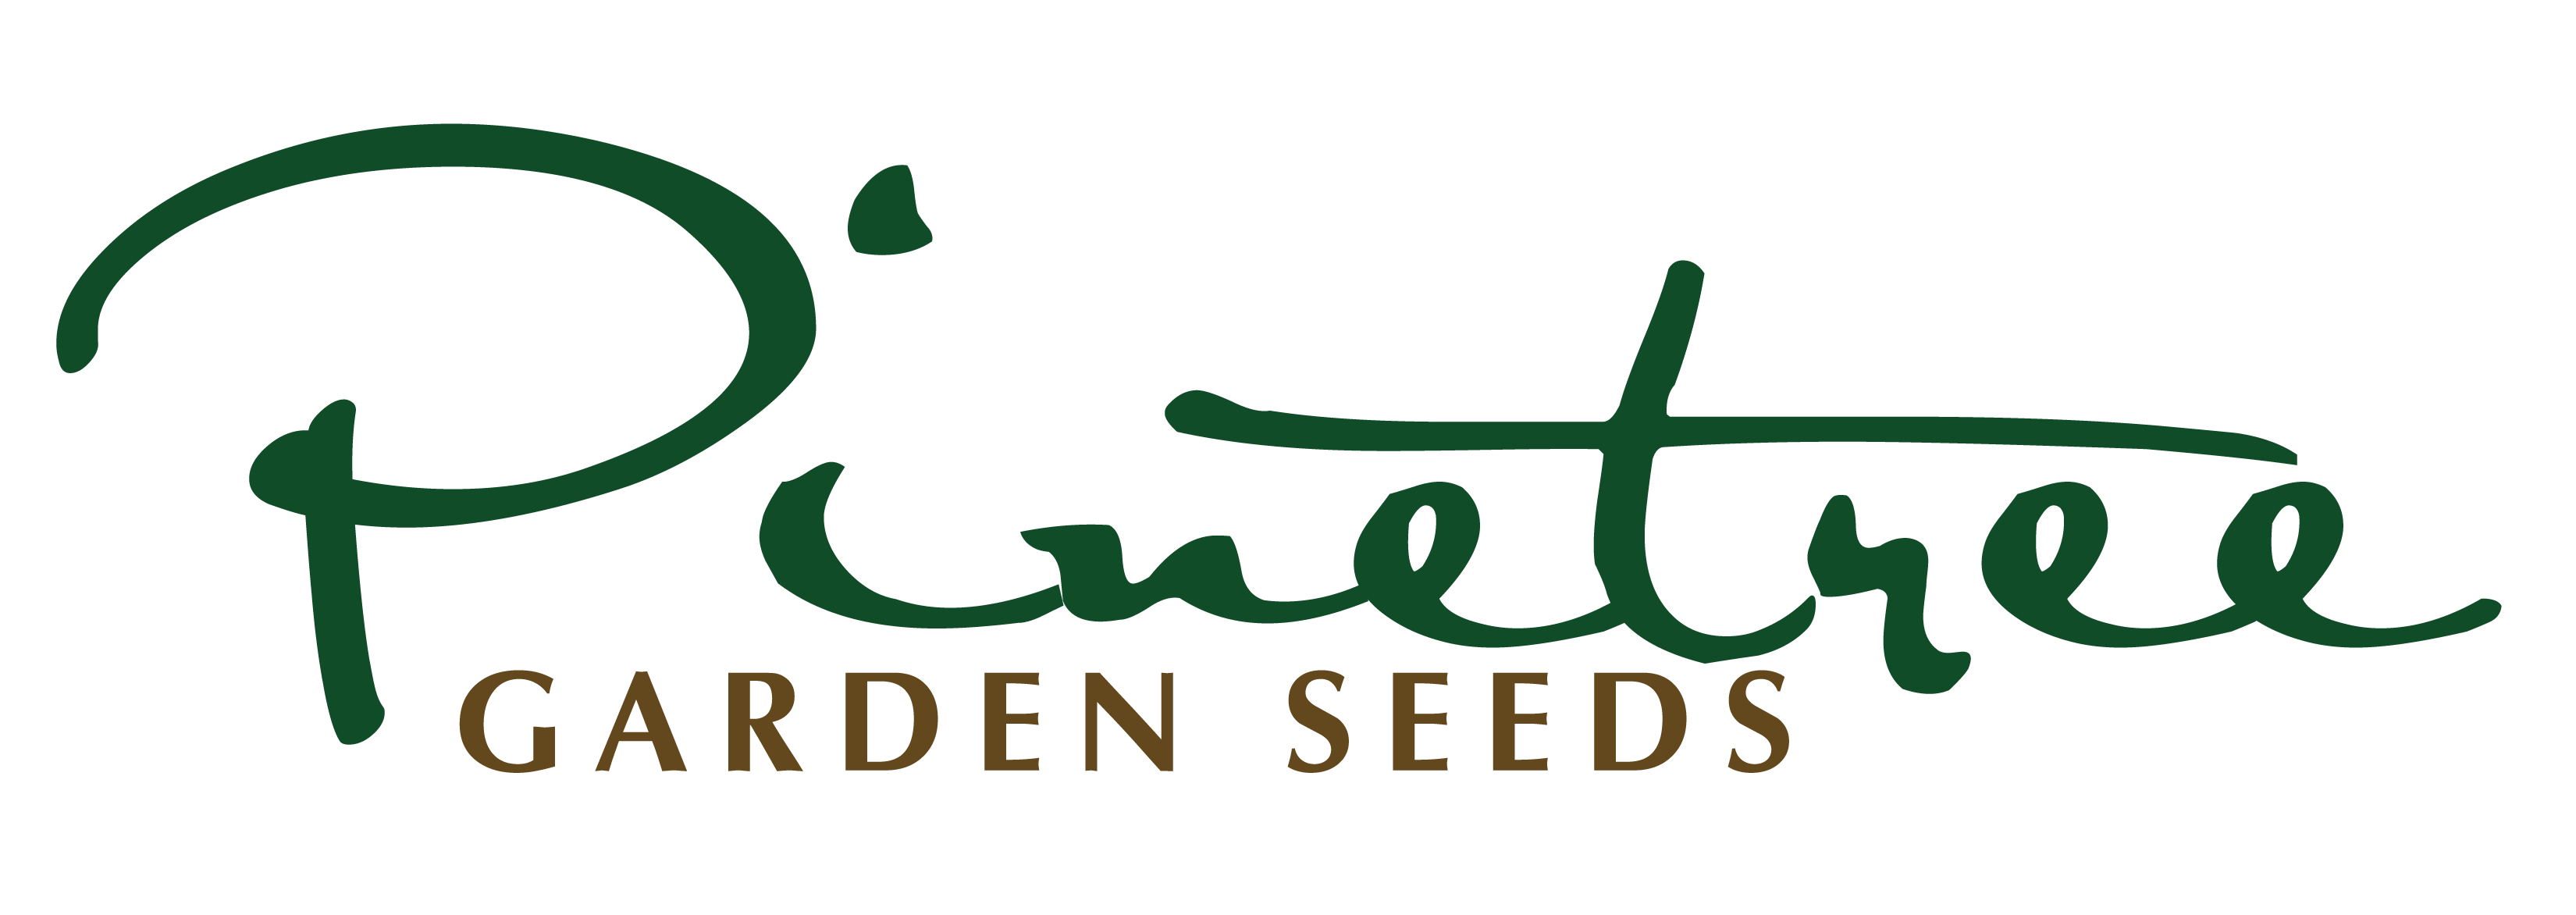 Pinetree Garden Seeds